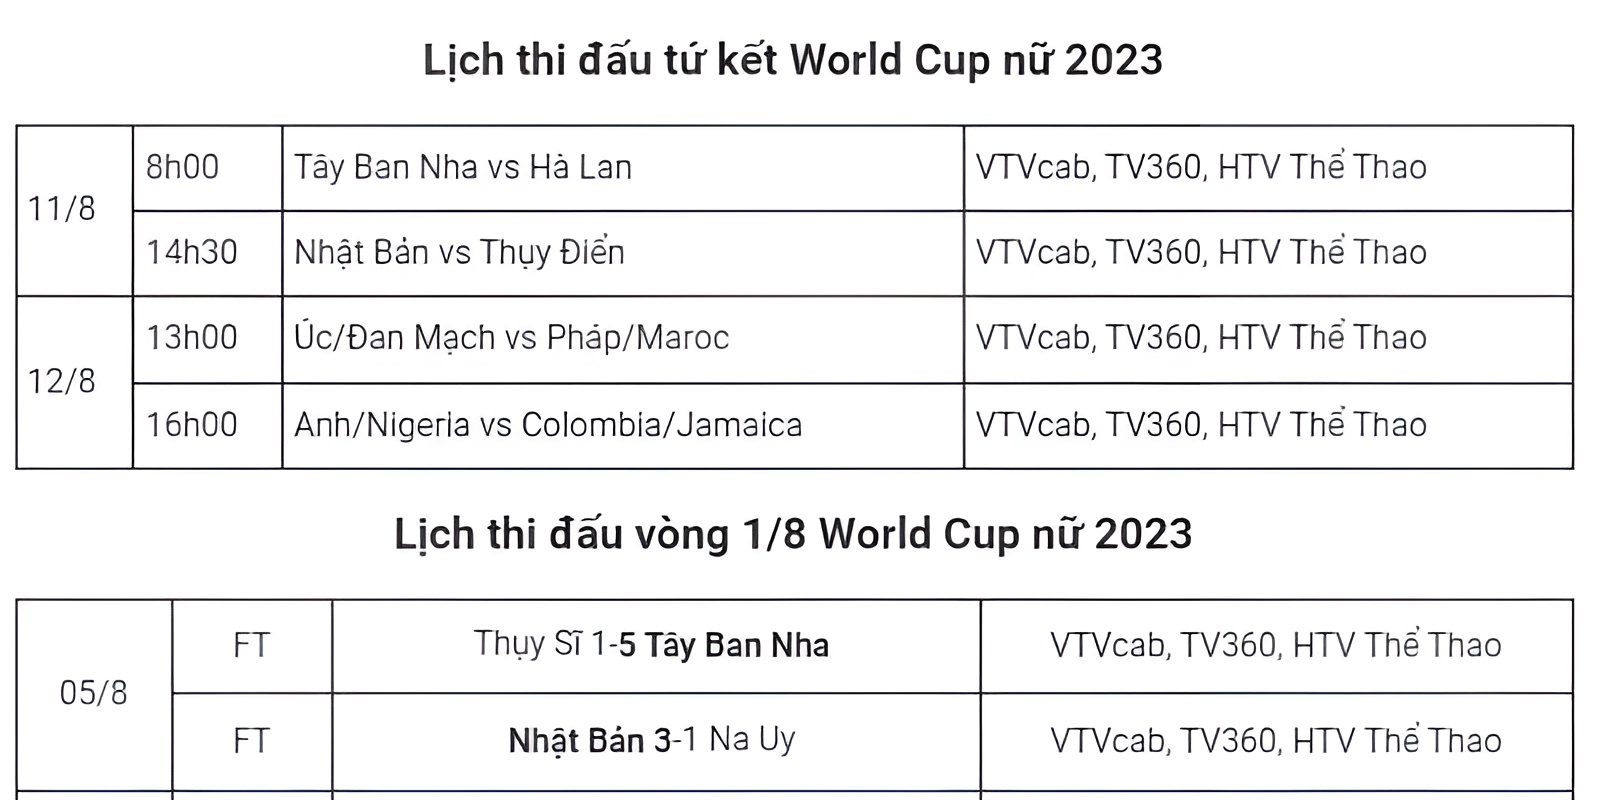 Cập nhật lịch thi đấu vòng tứ kết World Cup nữ 2023